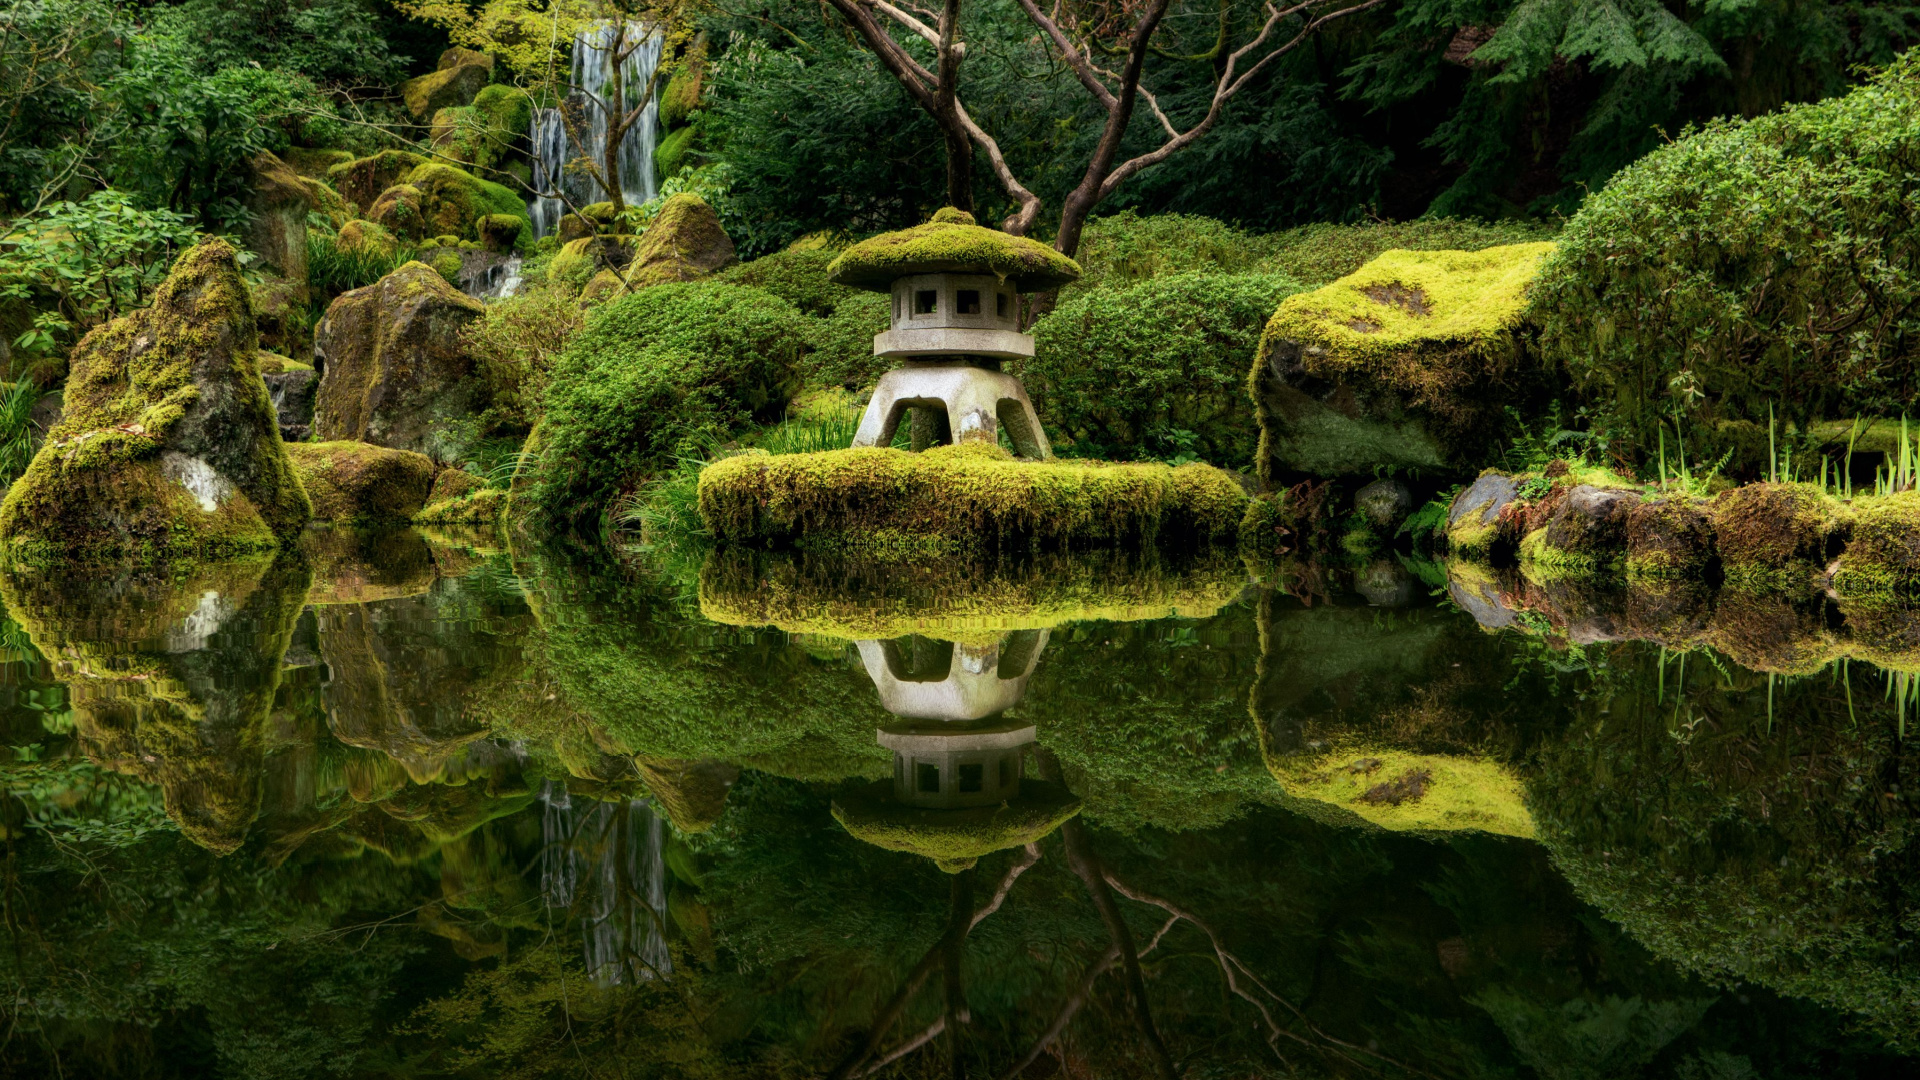 The Portland Japanese Garden in Oregon, USA